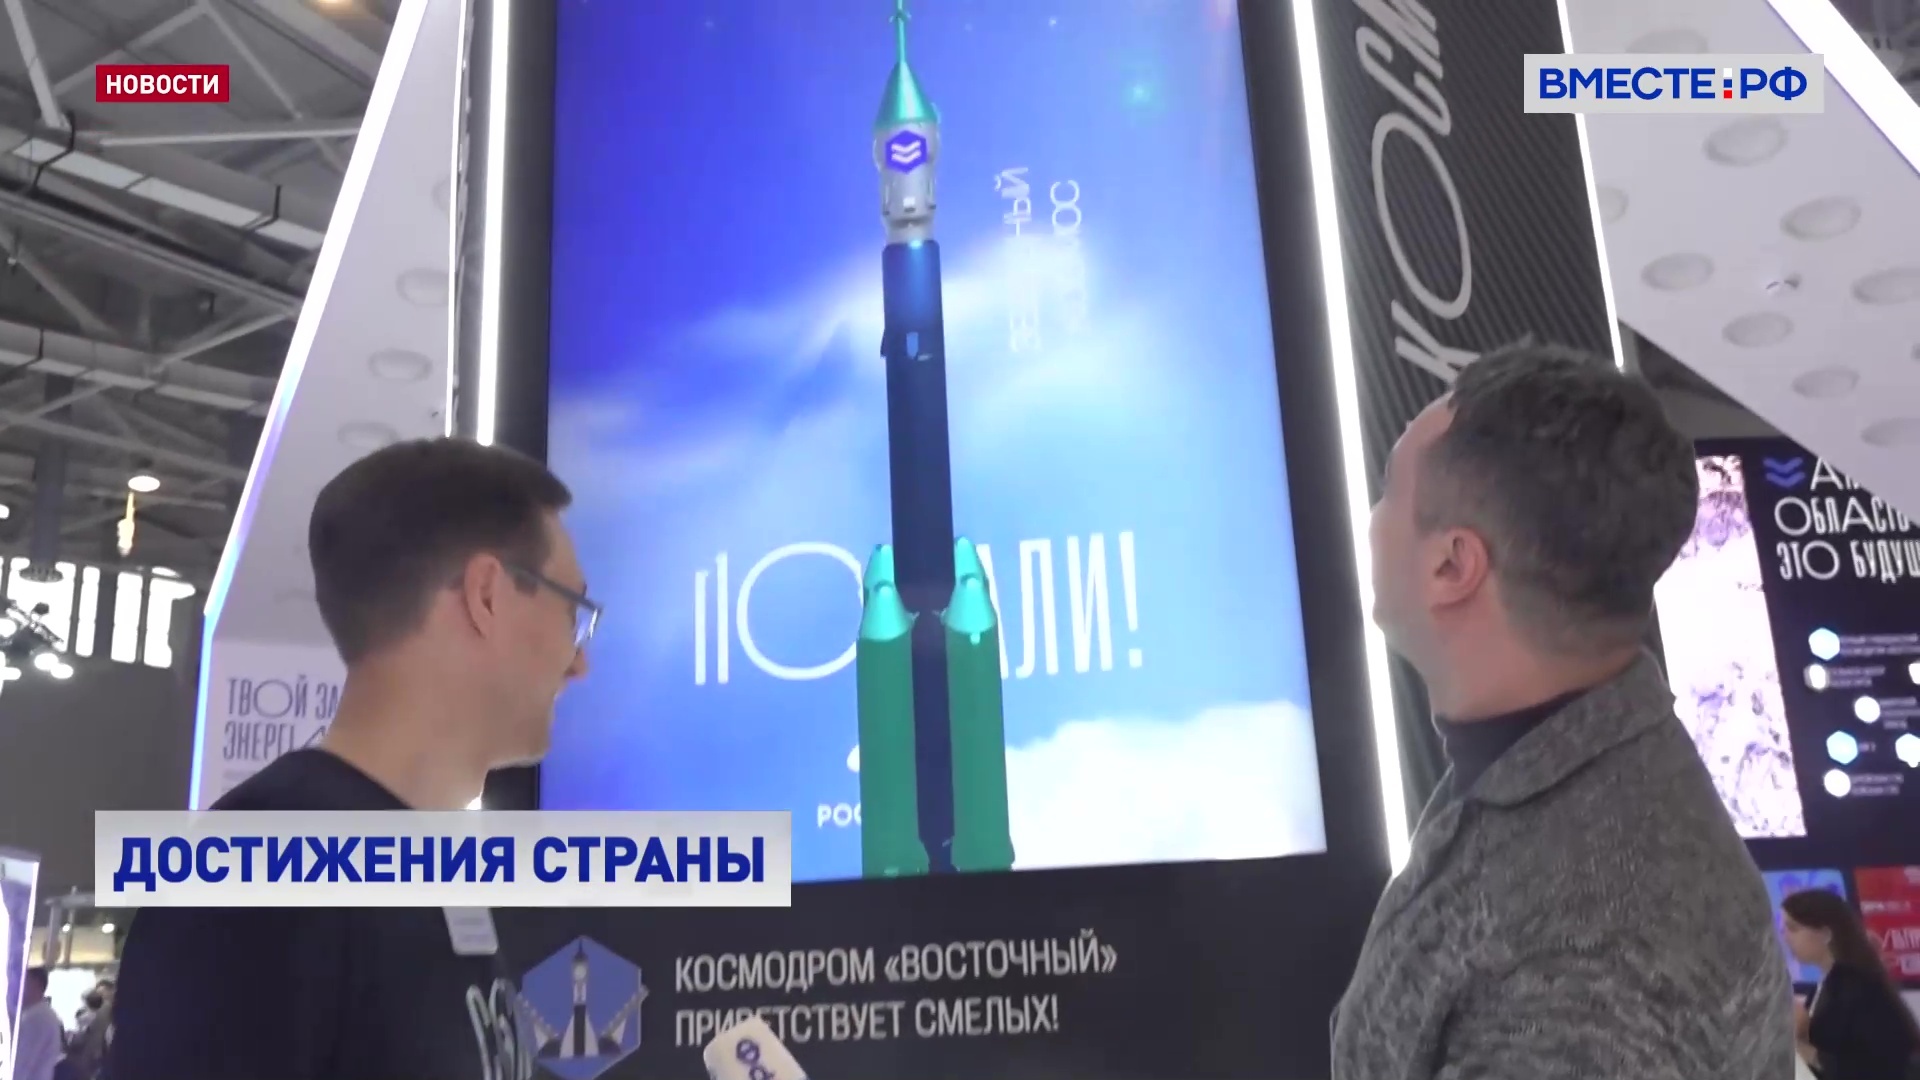 Выставка «Россия» рассказывает про успехи страны за несколько десятилетий